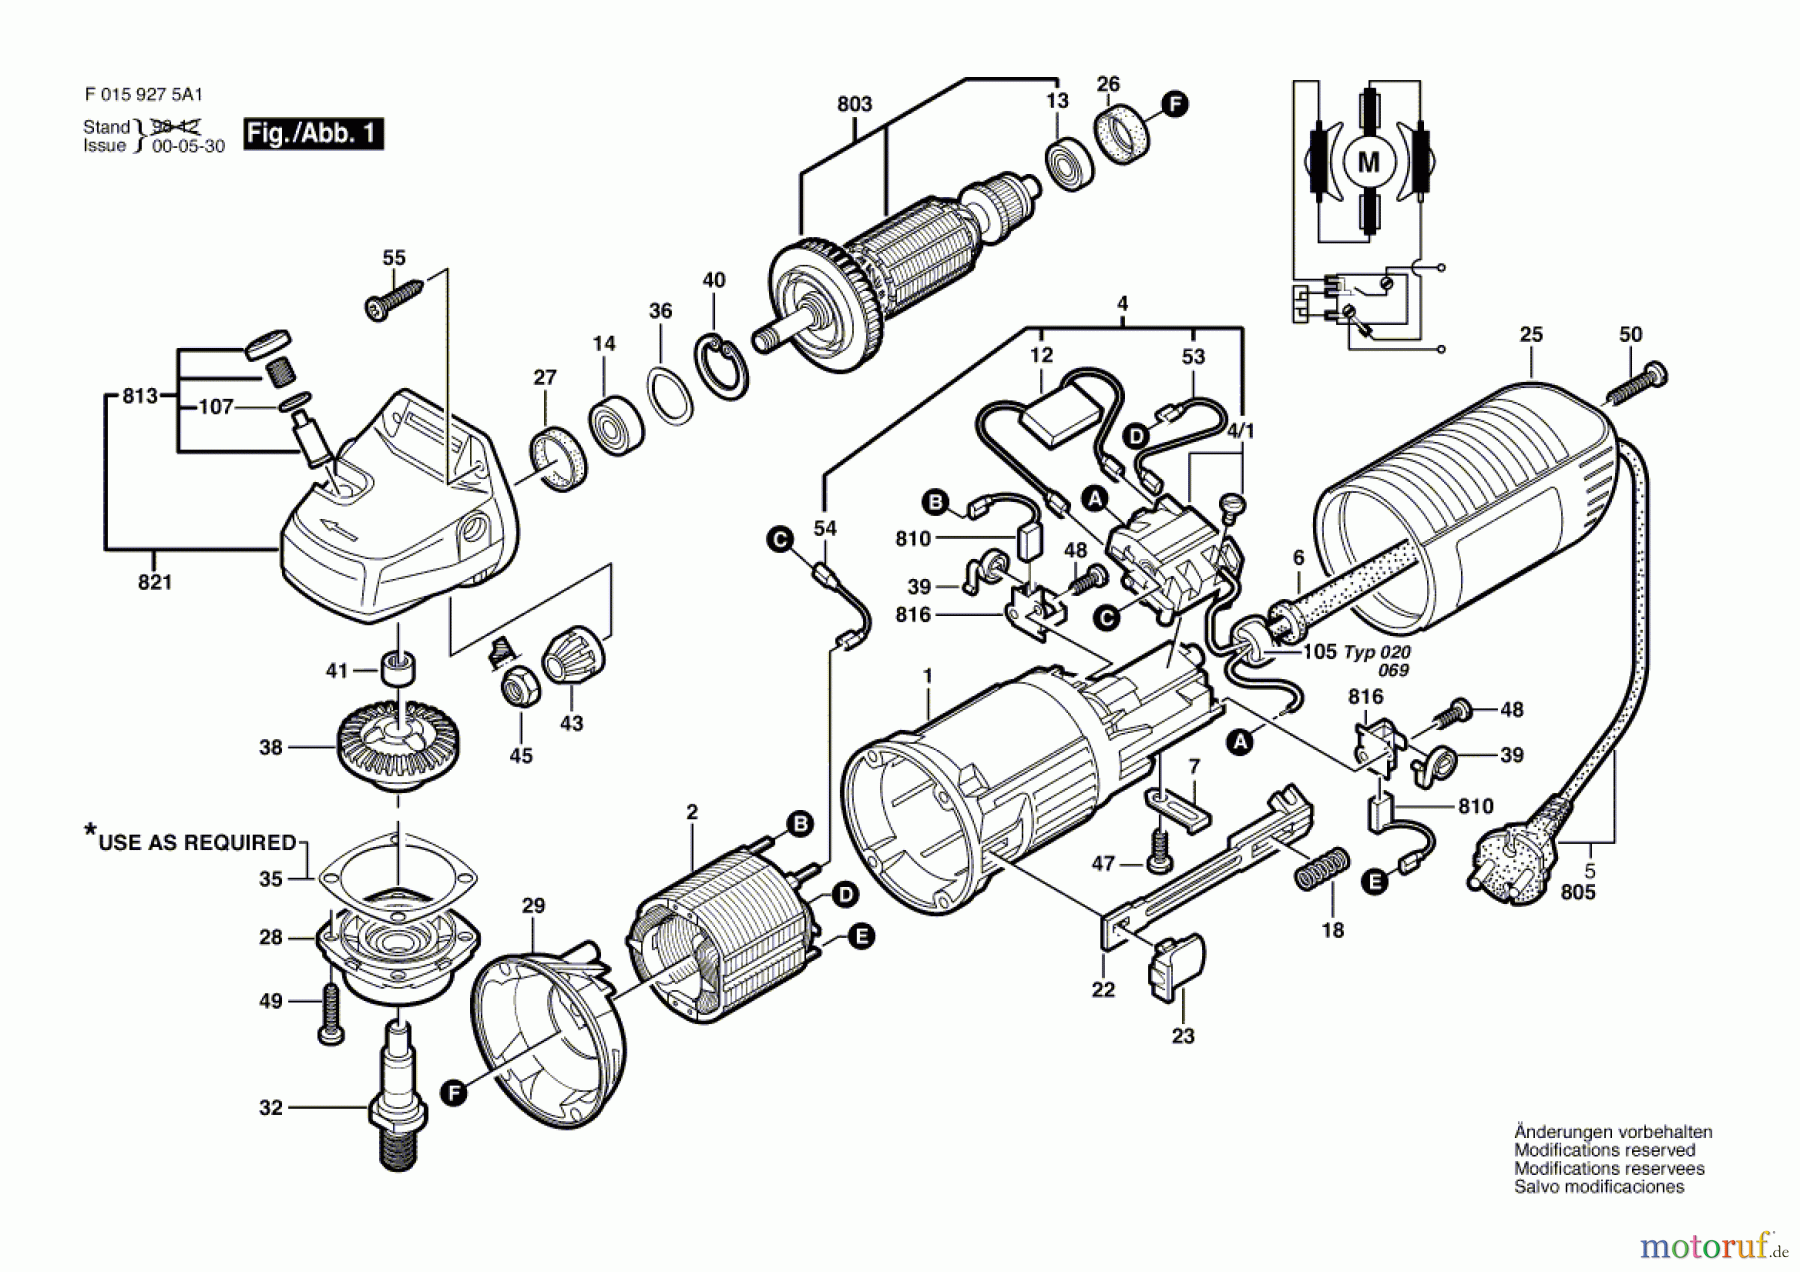  Bosch Werkzeug Winkelschleifer 9275 H1 Seite 1